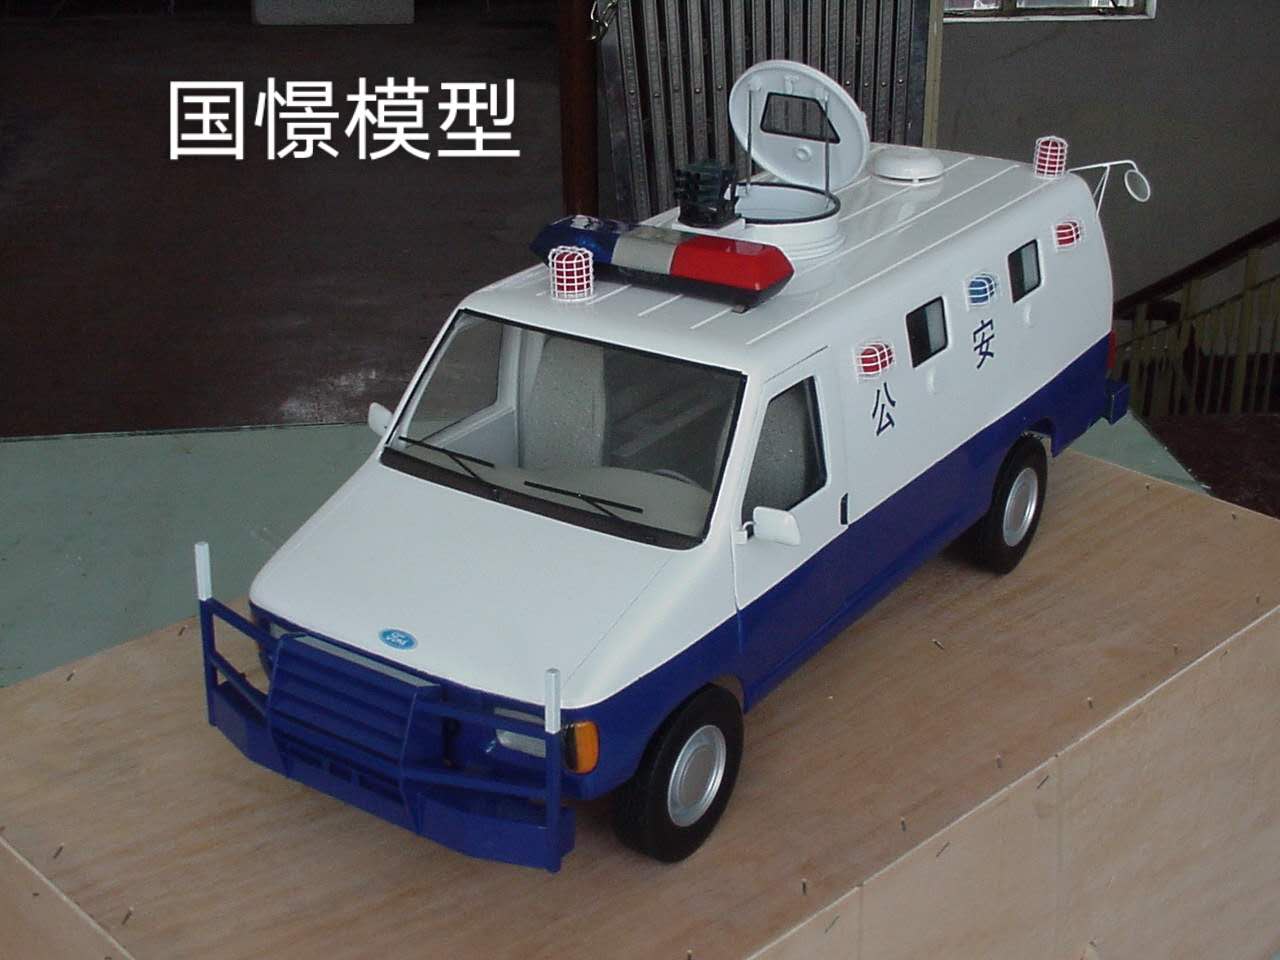 神木县车辆模型